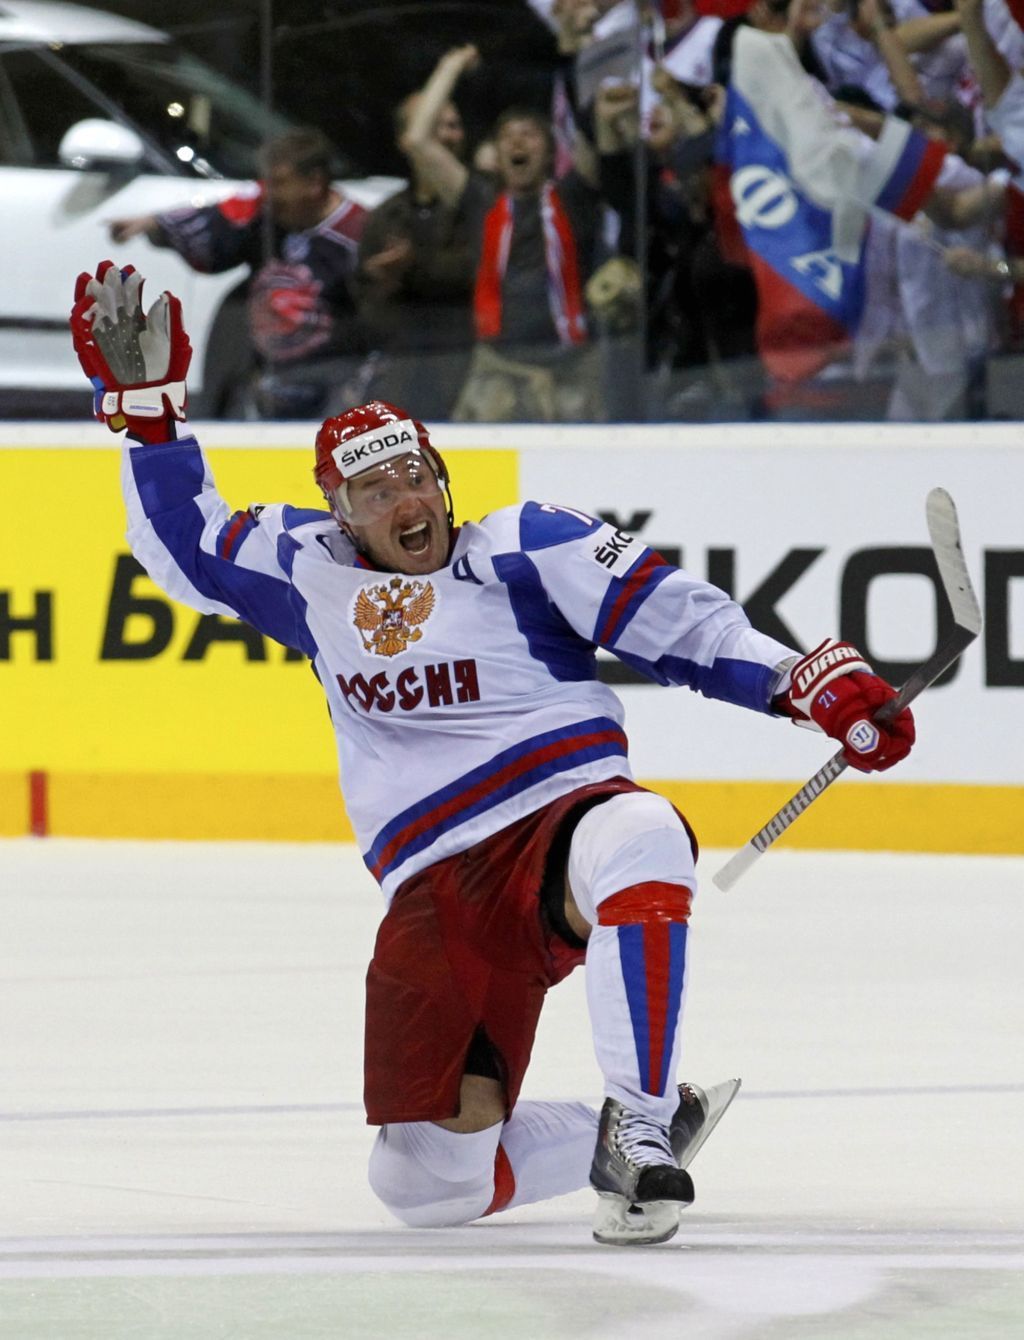 Ilja Kovalčuk, ruský hokejista.